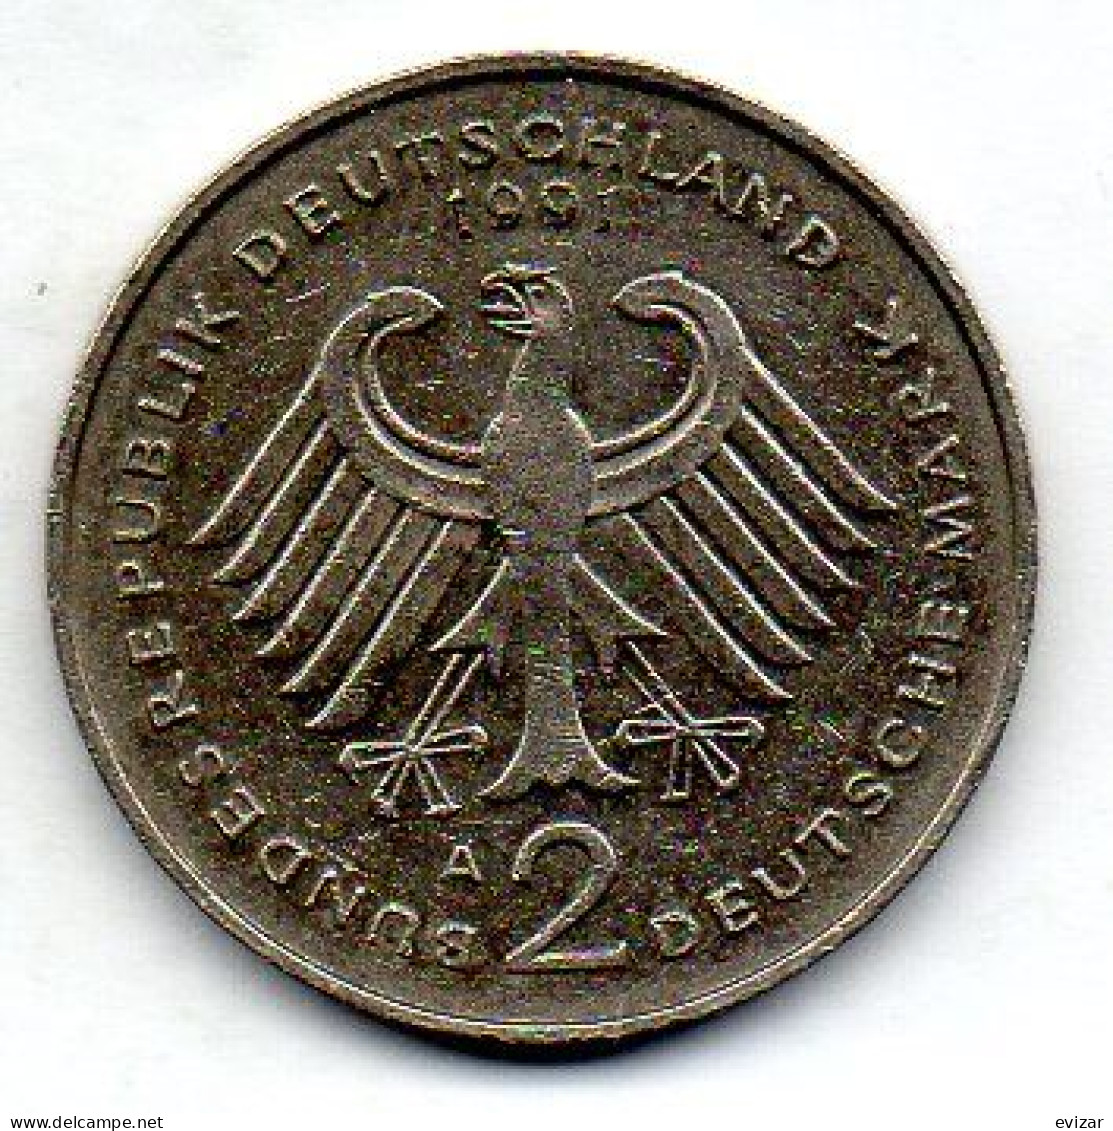 GERMANY - FEDERAL REPUBLIC, 2 Mark, Copper-Nickel, Year 1991-A, KM # 175 - 2 Marcos